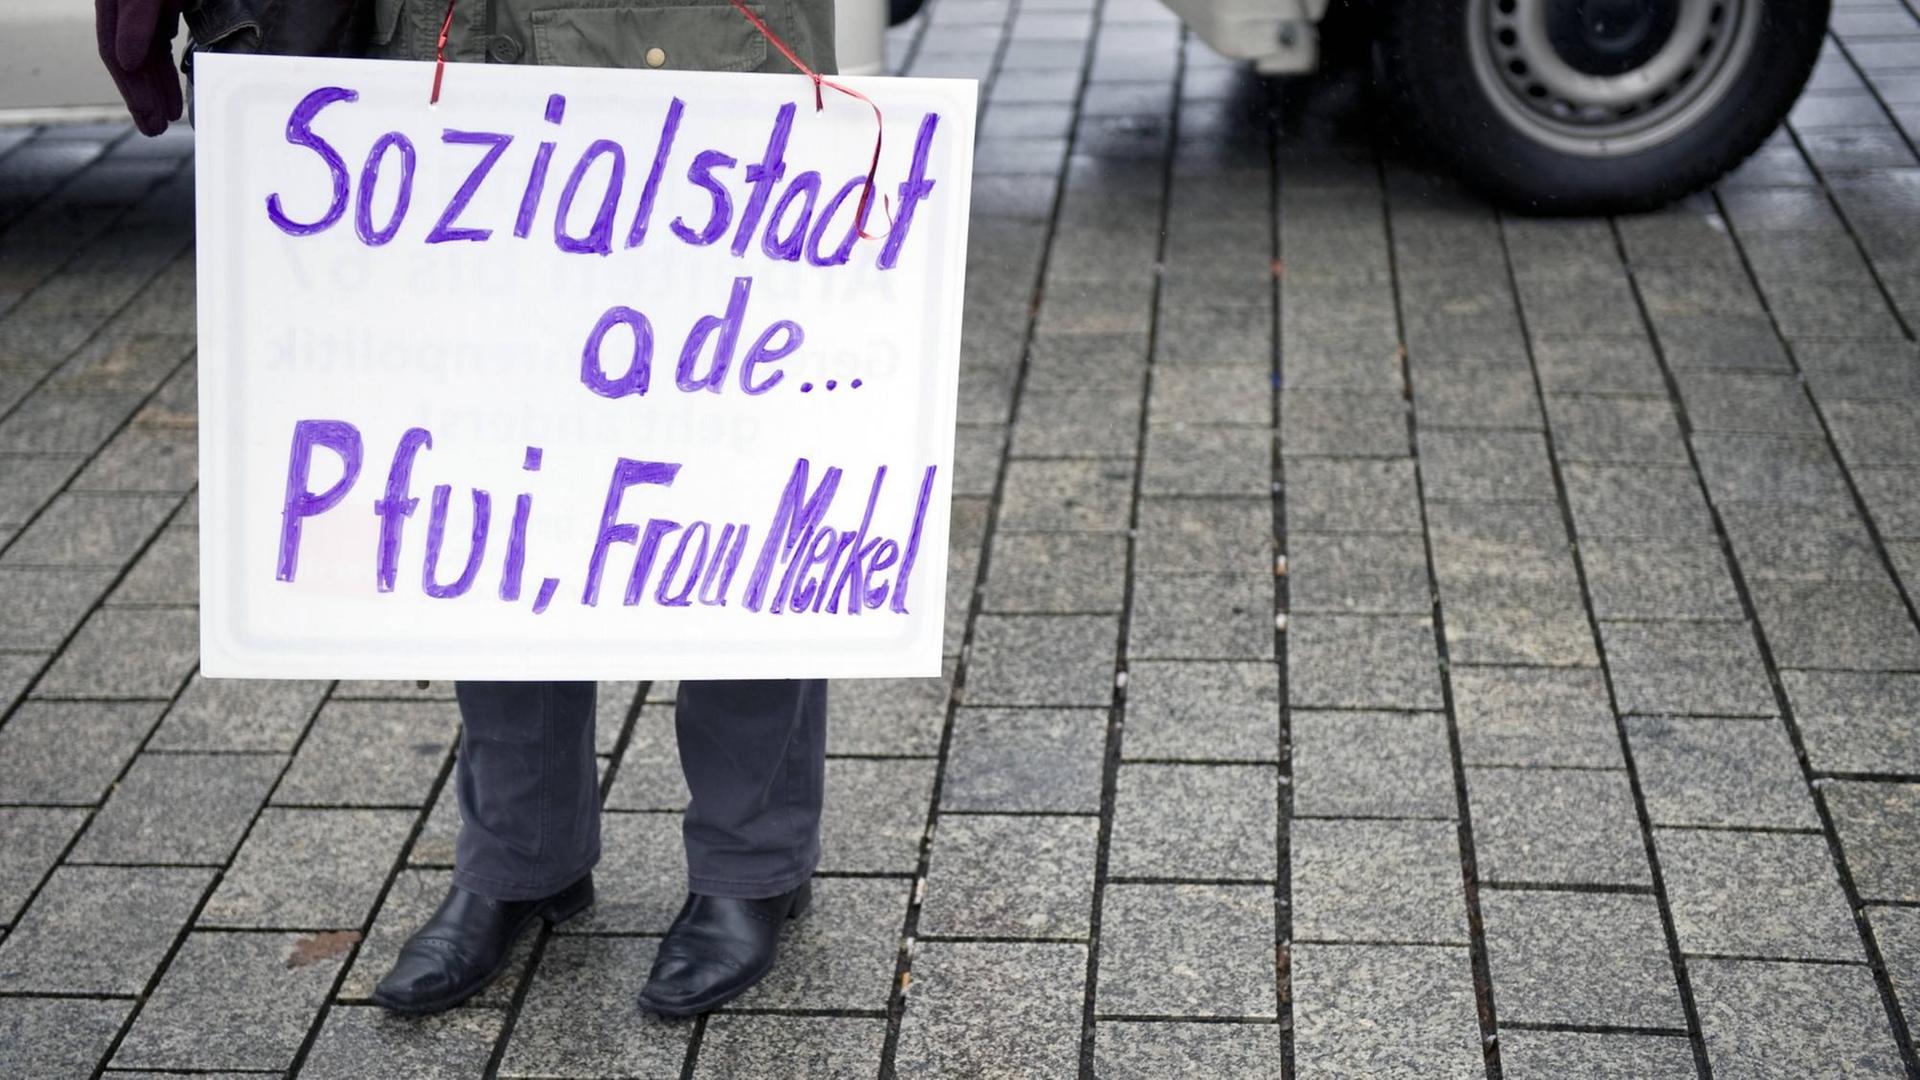 Eine Demonstrantin mit einem Schild auf dem Steht: "Sozialstaat ade Pfui Frau Merkel" Symbolfoto,